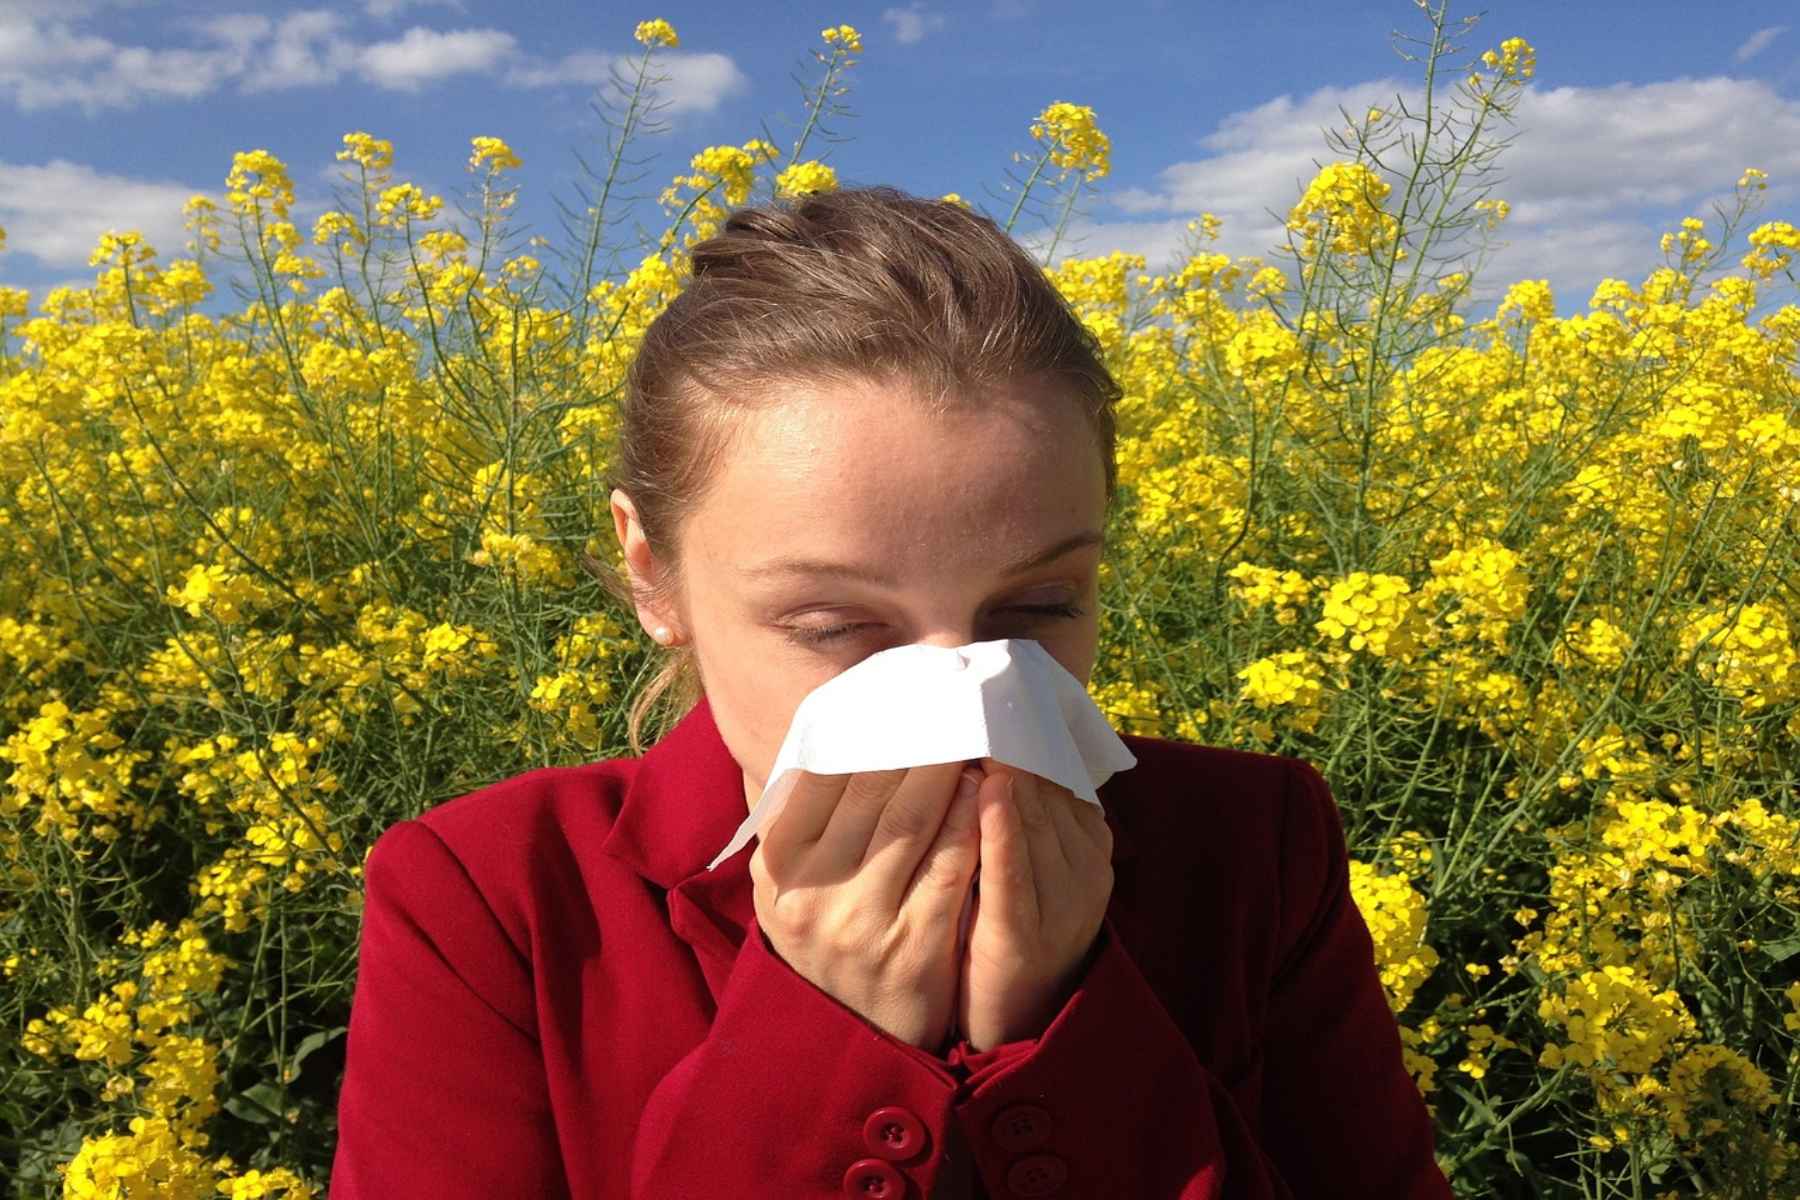 Αλλεργίες: Βήματα πρόληψης και ανακούφισης